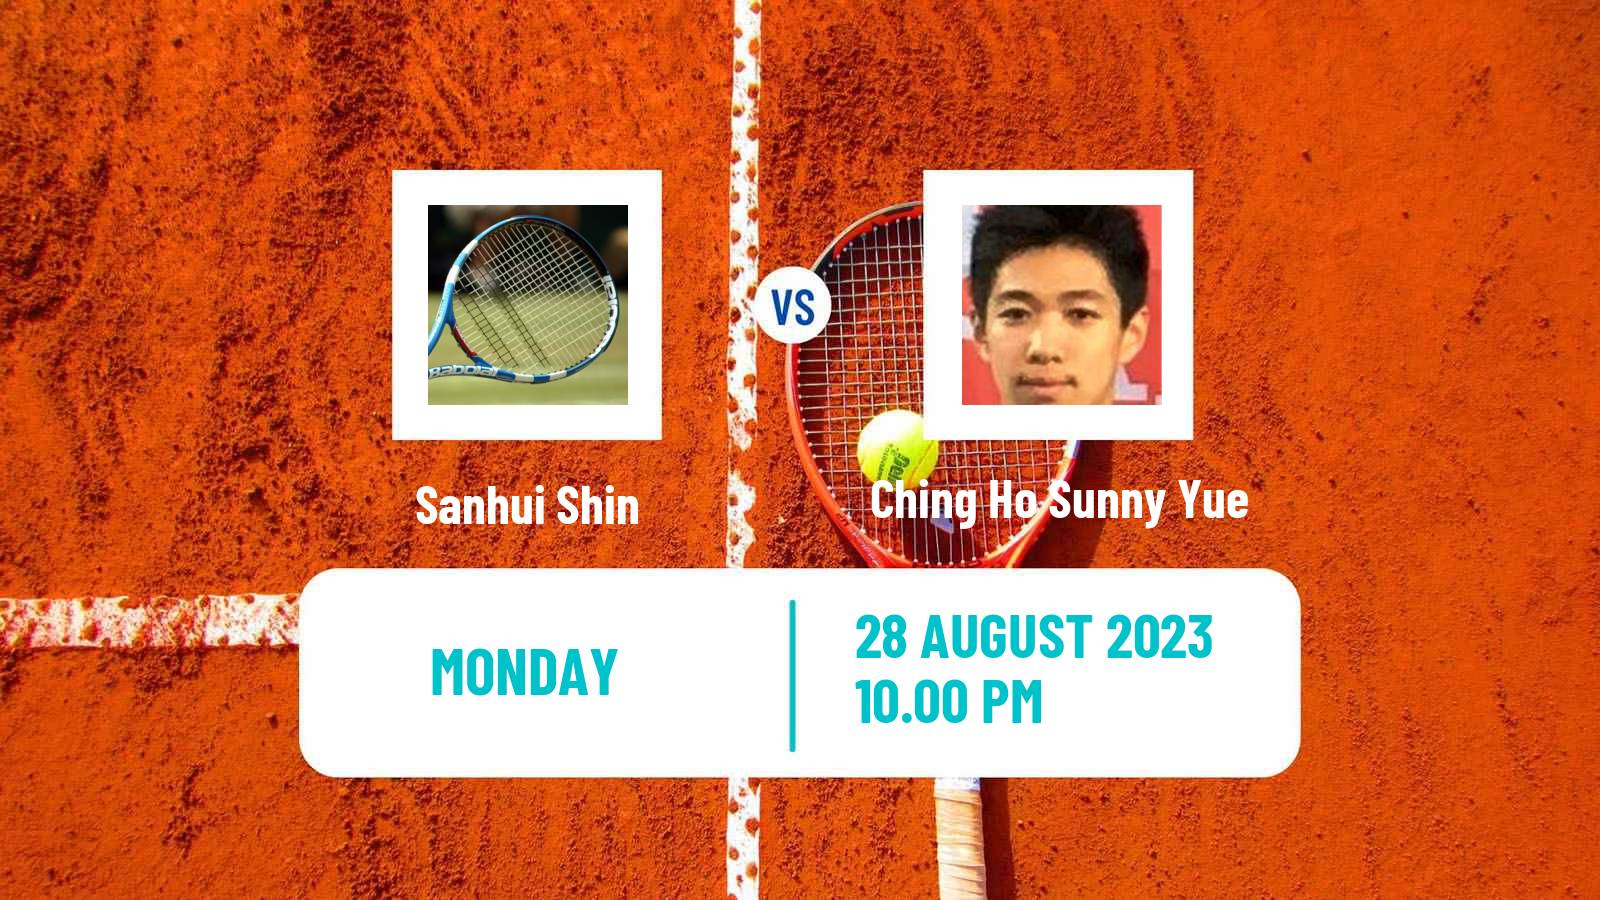 Tennis ITF M25 Hong Kong Men Sanhui Shin - Ching Ho Sunny Yue